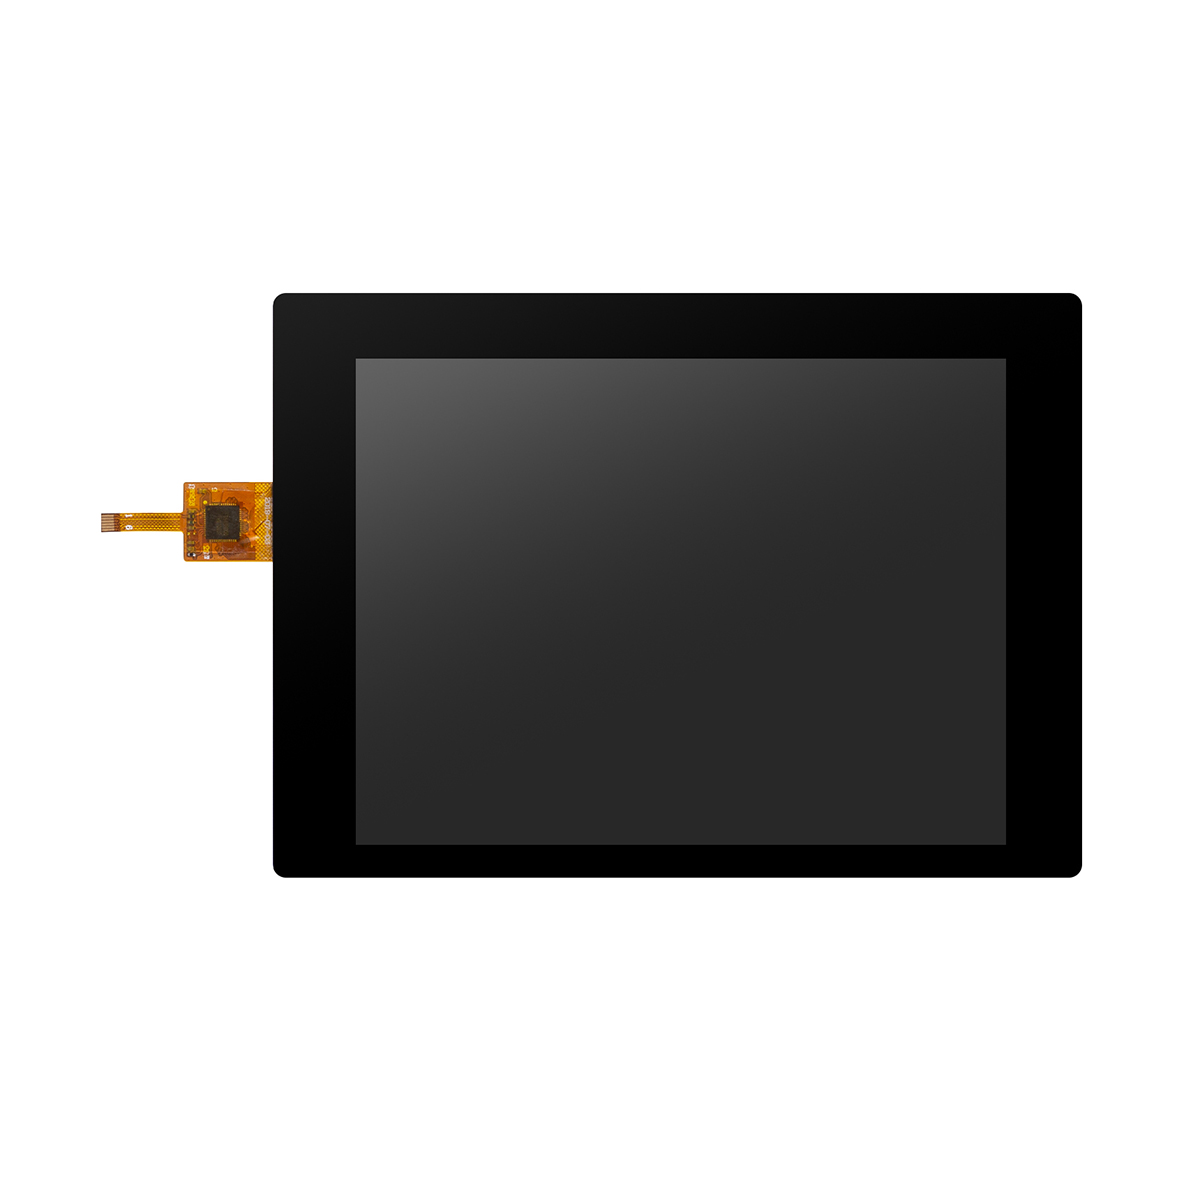 5.7inch Glass Panel LCD Touchscreen e etselitsoeng ponts'o